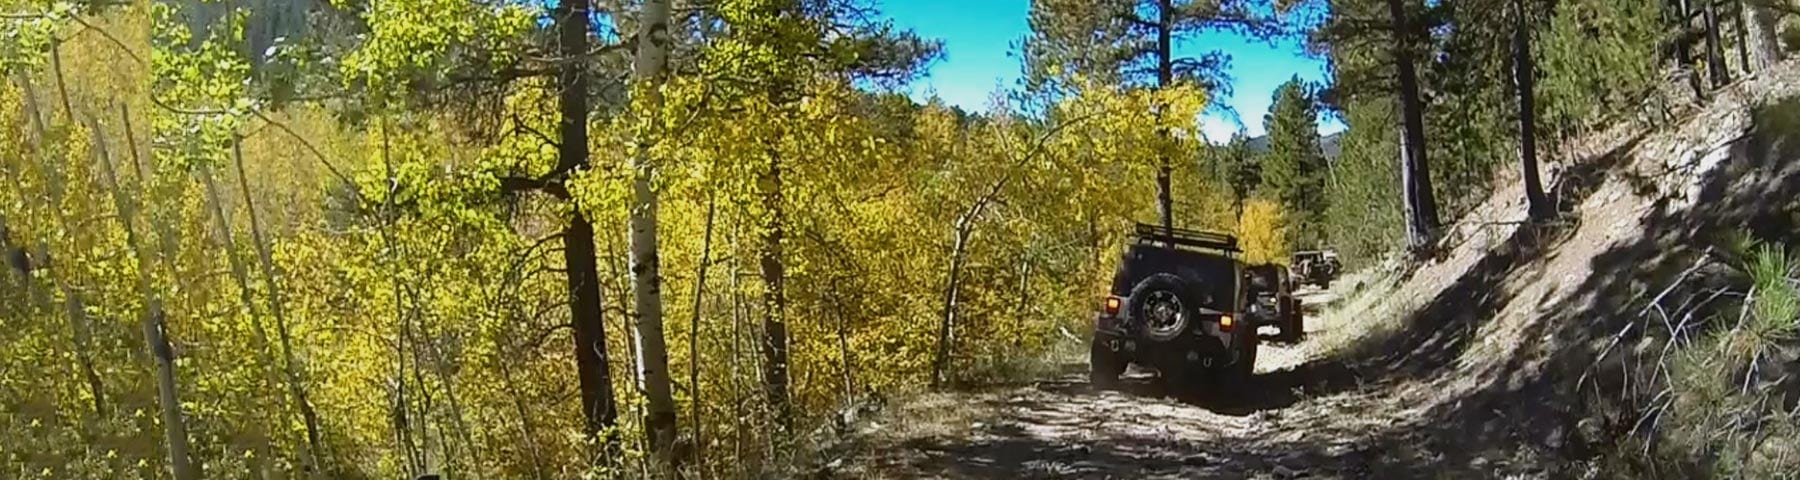 black hills jeep trip